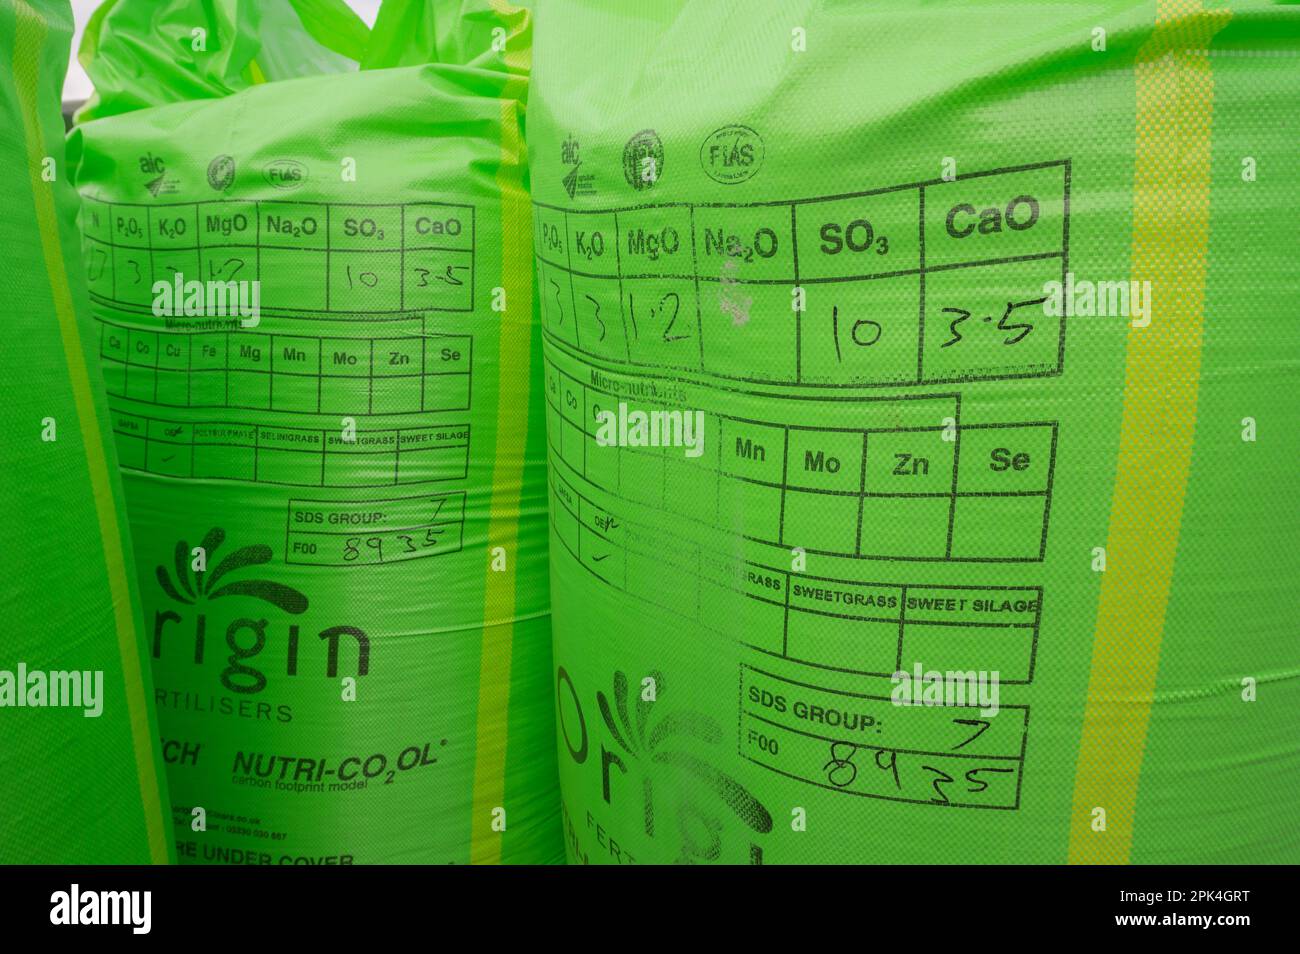 Bolsas de fertilizante en una granja lechera en Carmarthenshire, Gales, Reino Unido. Los químicos contenidos en el fertilizante incluyen fosfato y nitrógeno Foto de stock